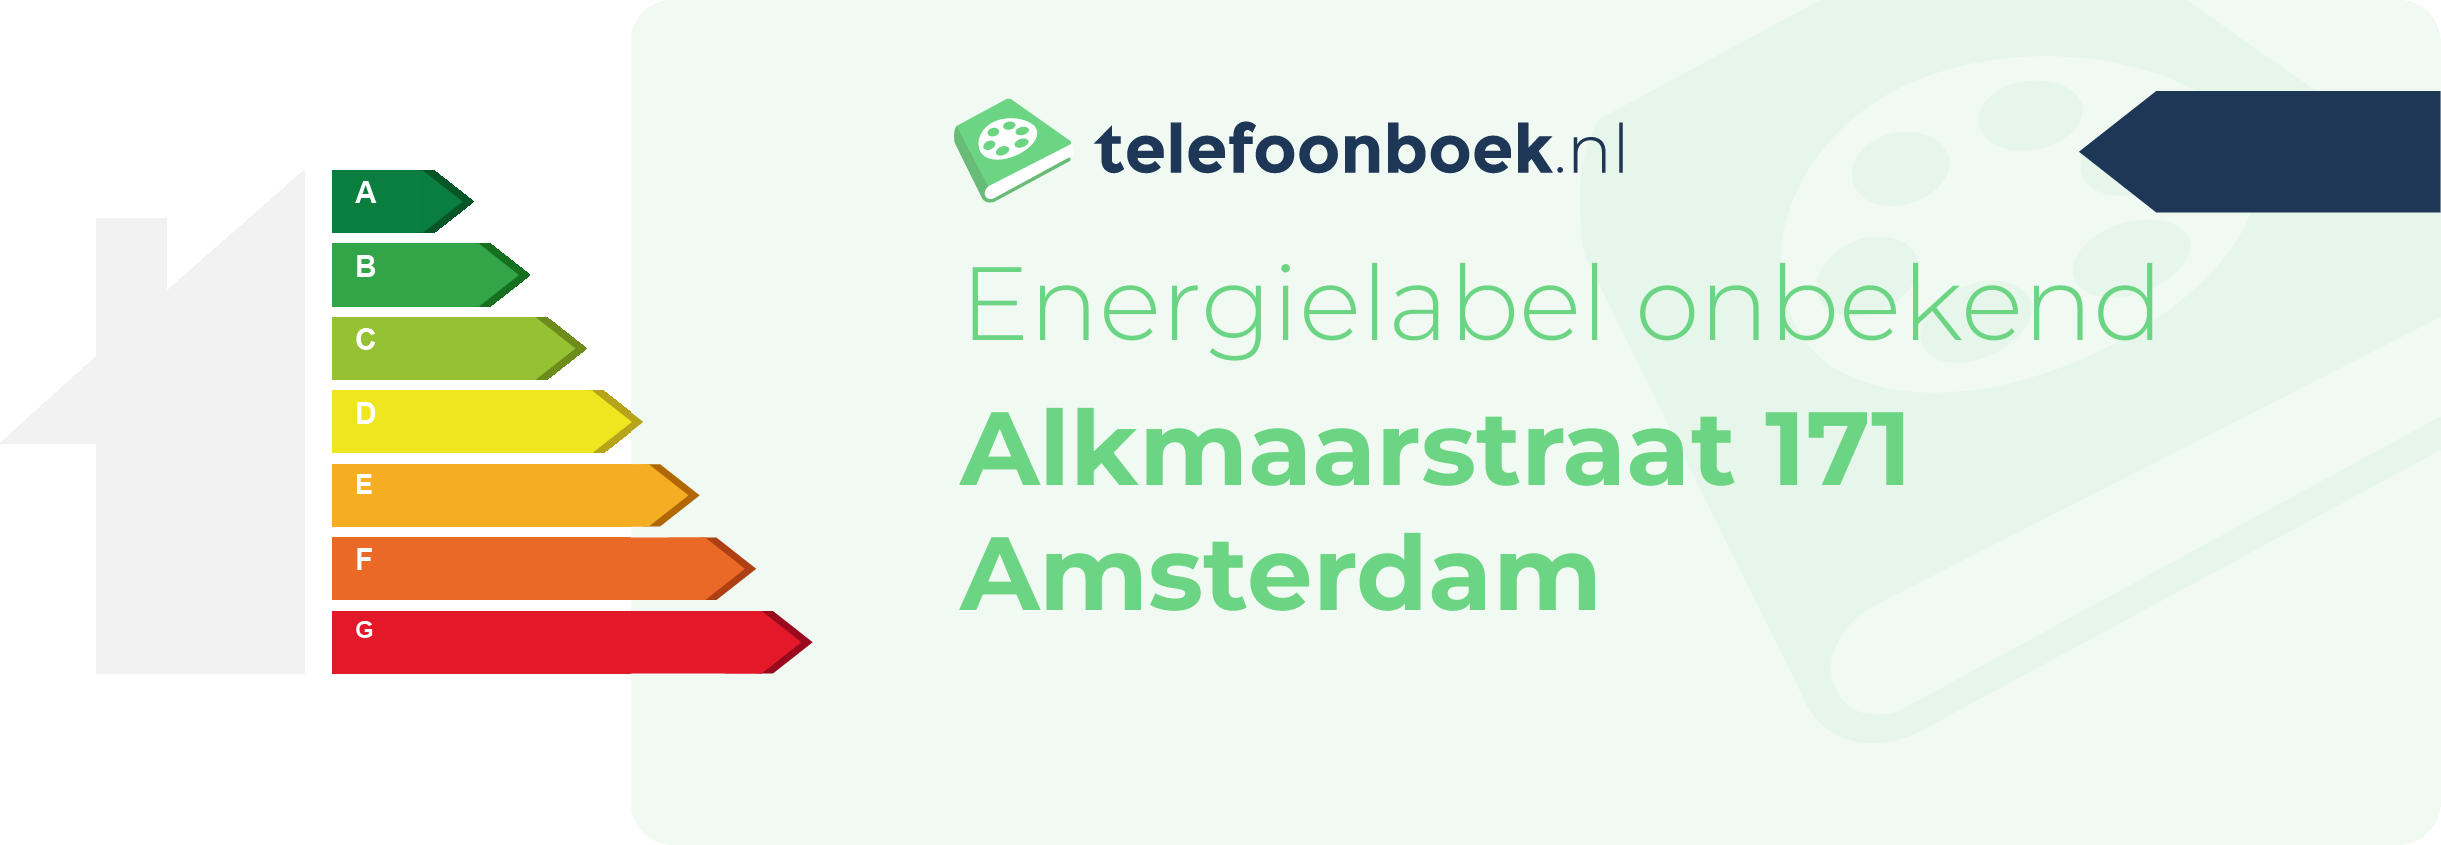 Energielabel Alkmaarstraat 171 Amsterdam